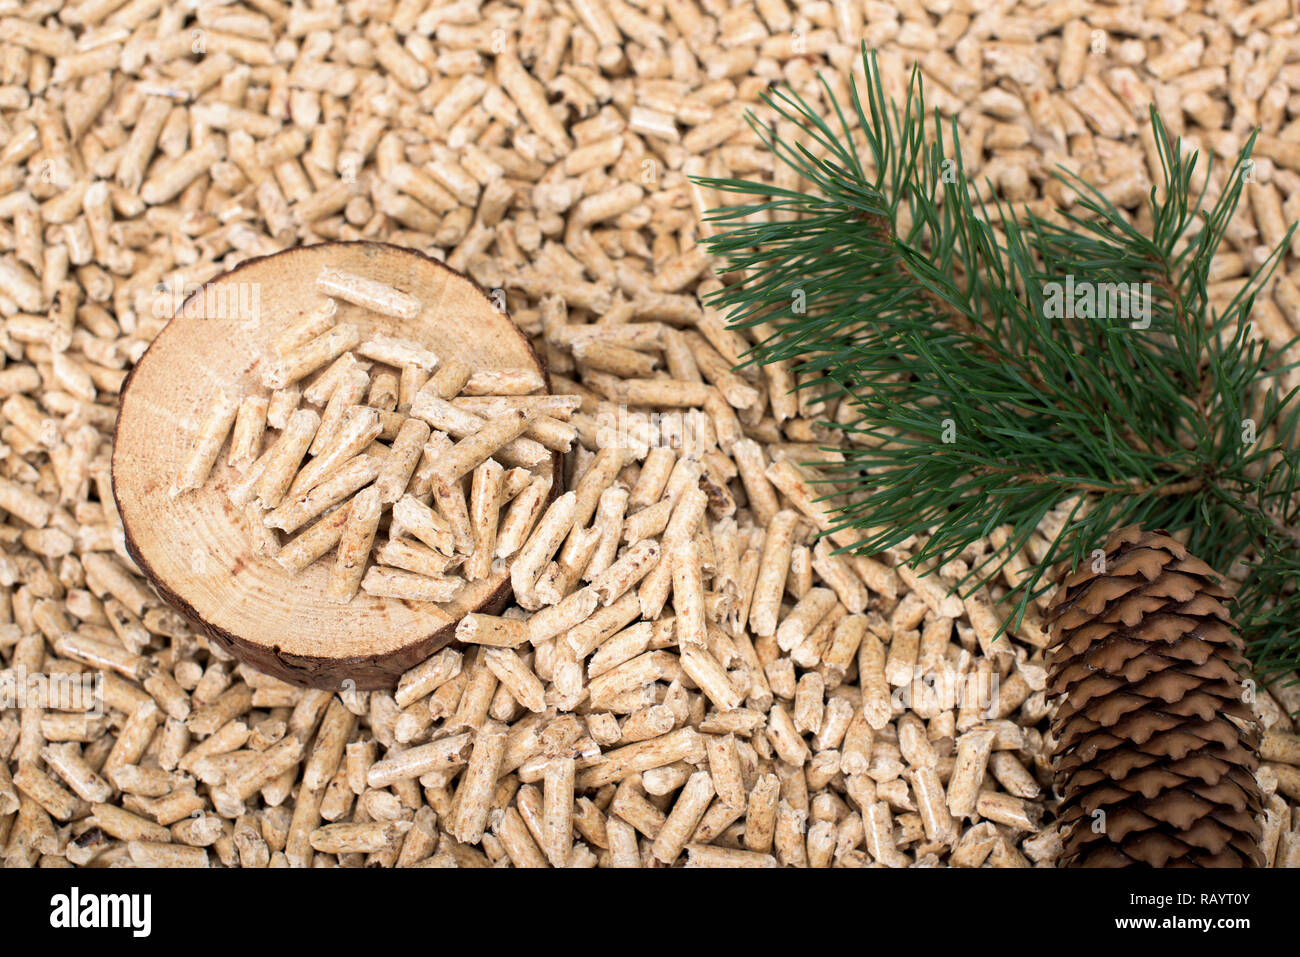 Kiefer Slice, Zweig, und conch auf Holz- pellets - Biomasse Stockfoto